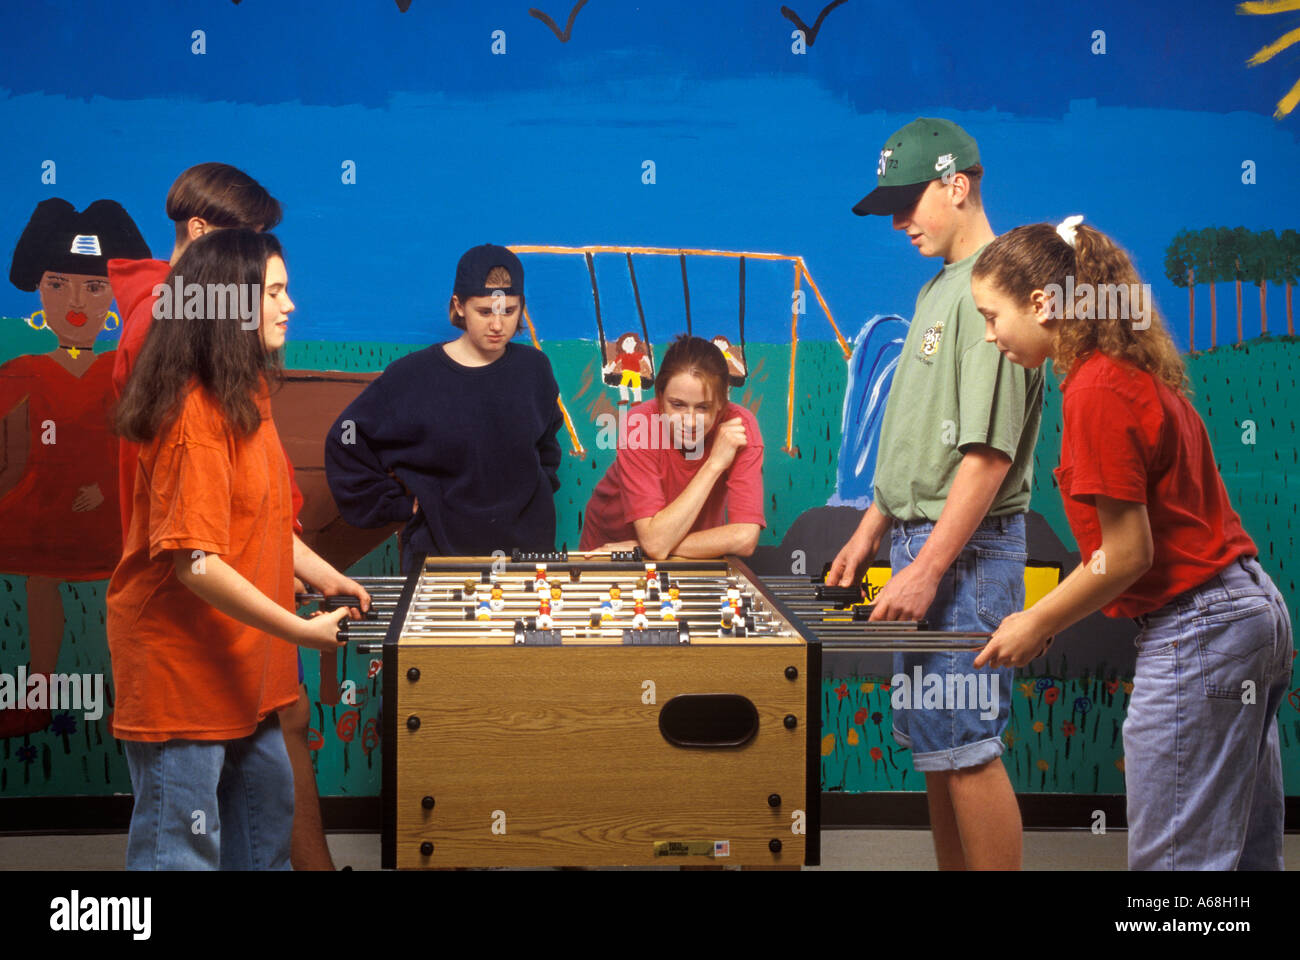 Teens playing foosball Stock Photo